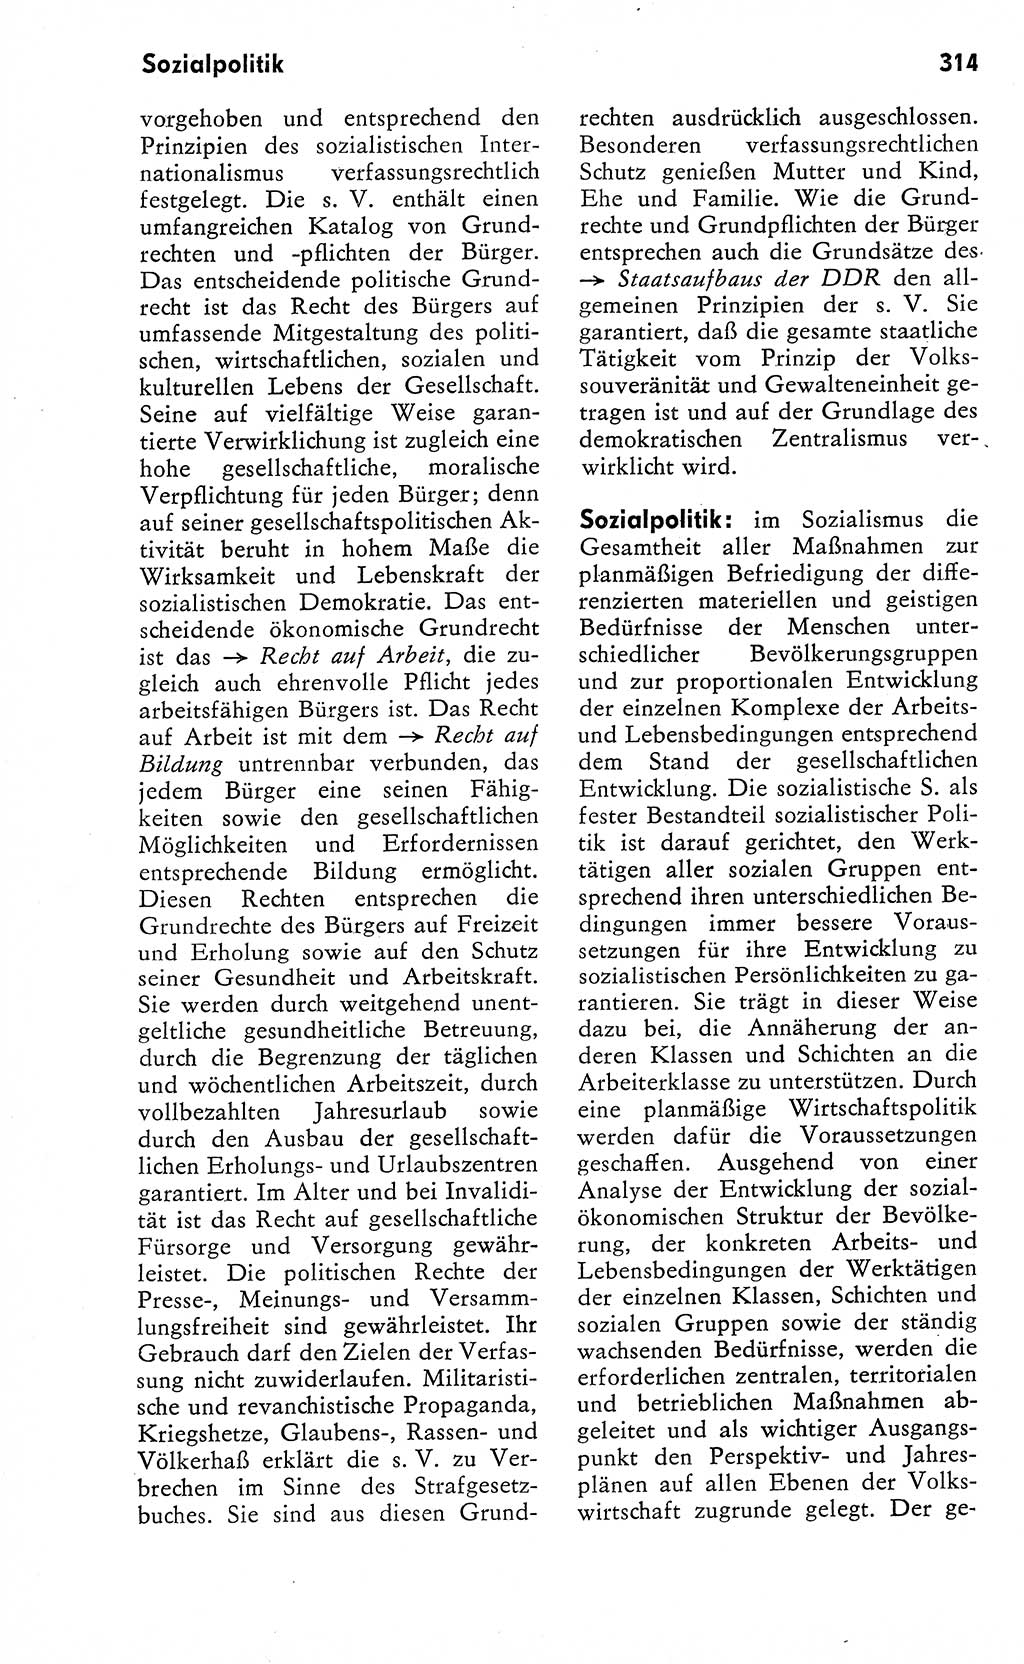 Wörterbuch zum sozialistischen Staat [Deutsche Demokratische Republik (DDR)] 1974, Seite 314 (Wb. soz. St. DDR 1974, S. 314)